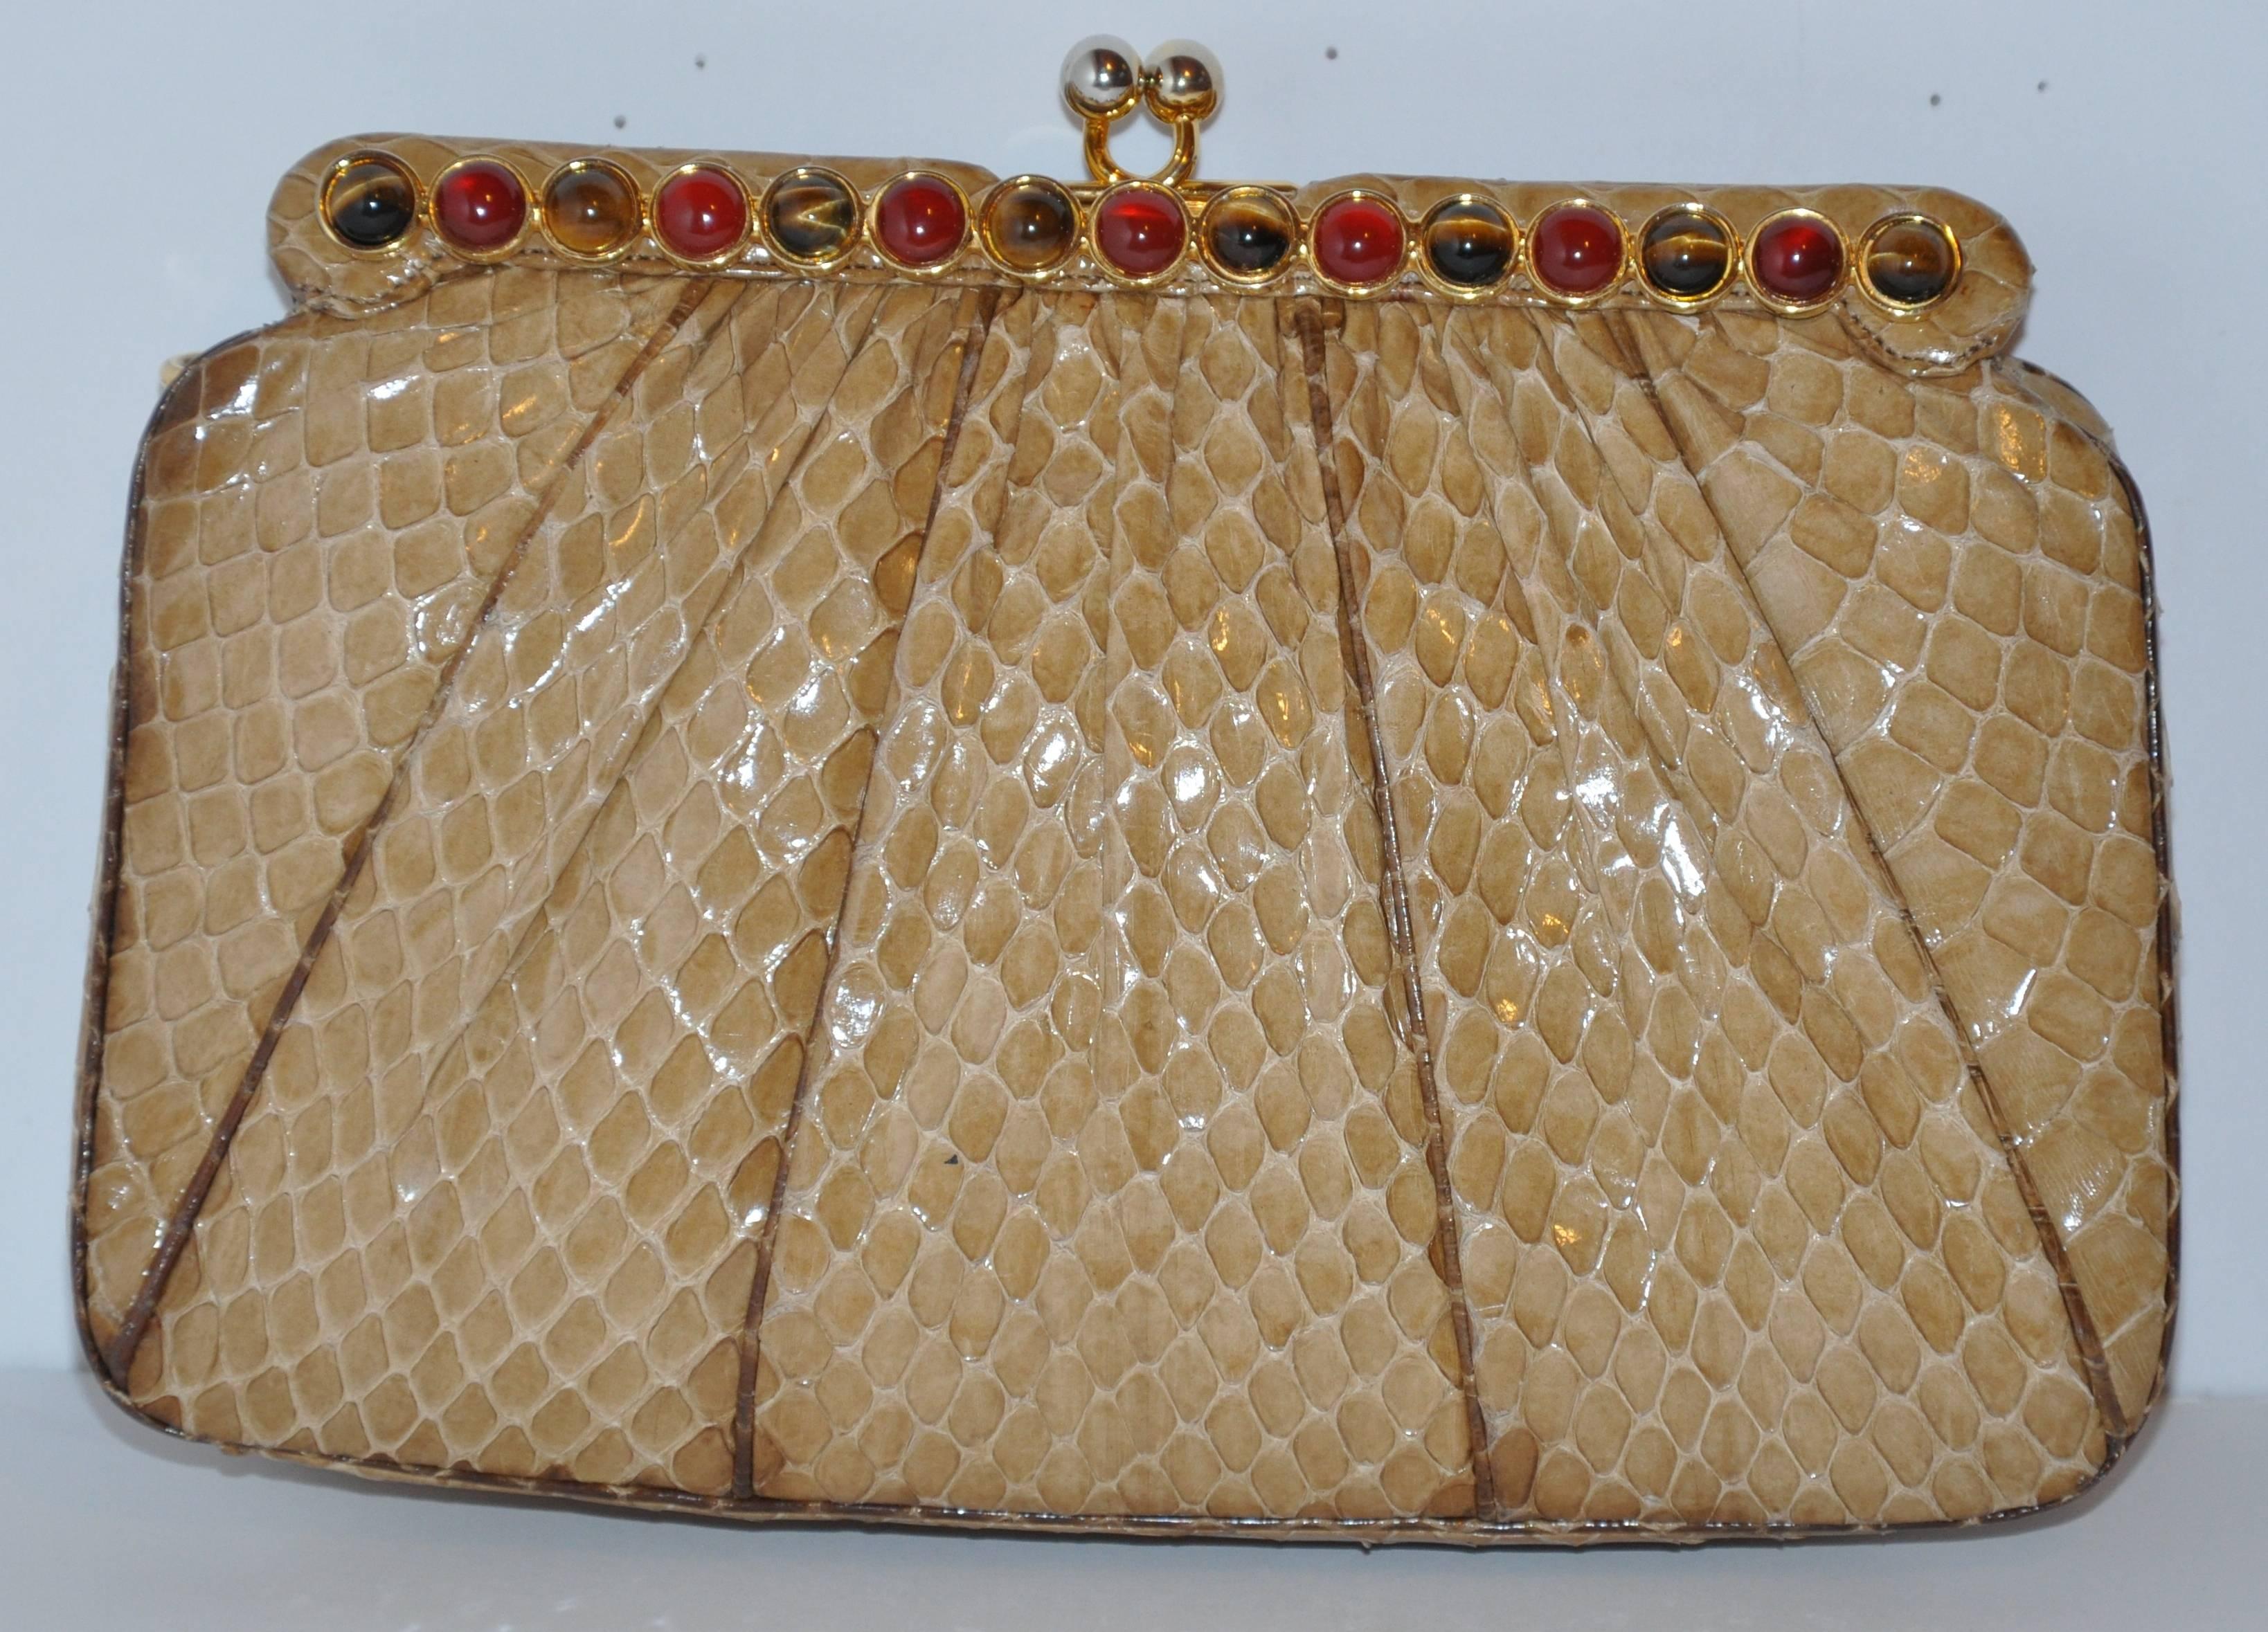            La pochette du soir en python beige merveilleusement détaillée de Judith Leiber peut être utilisée en option comme sac à bandoulière avec ses lanières amovibles en python et son matériel doré. La pochette de soirée est très détaillée avec